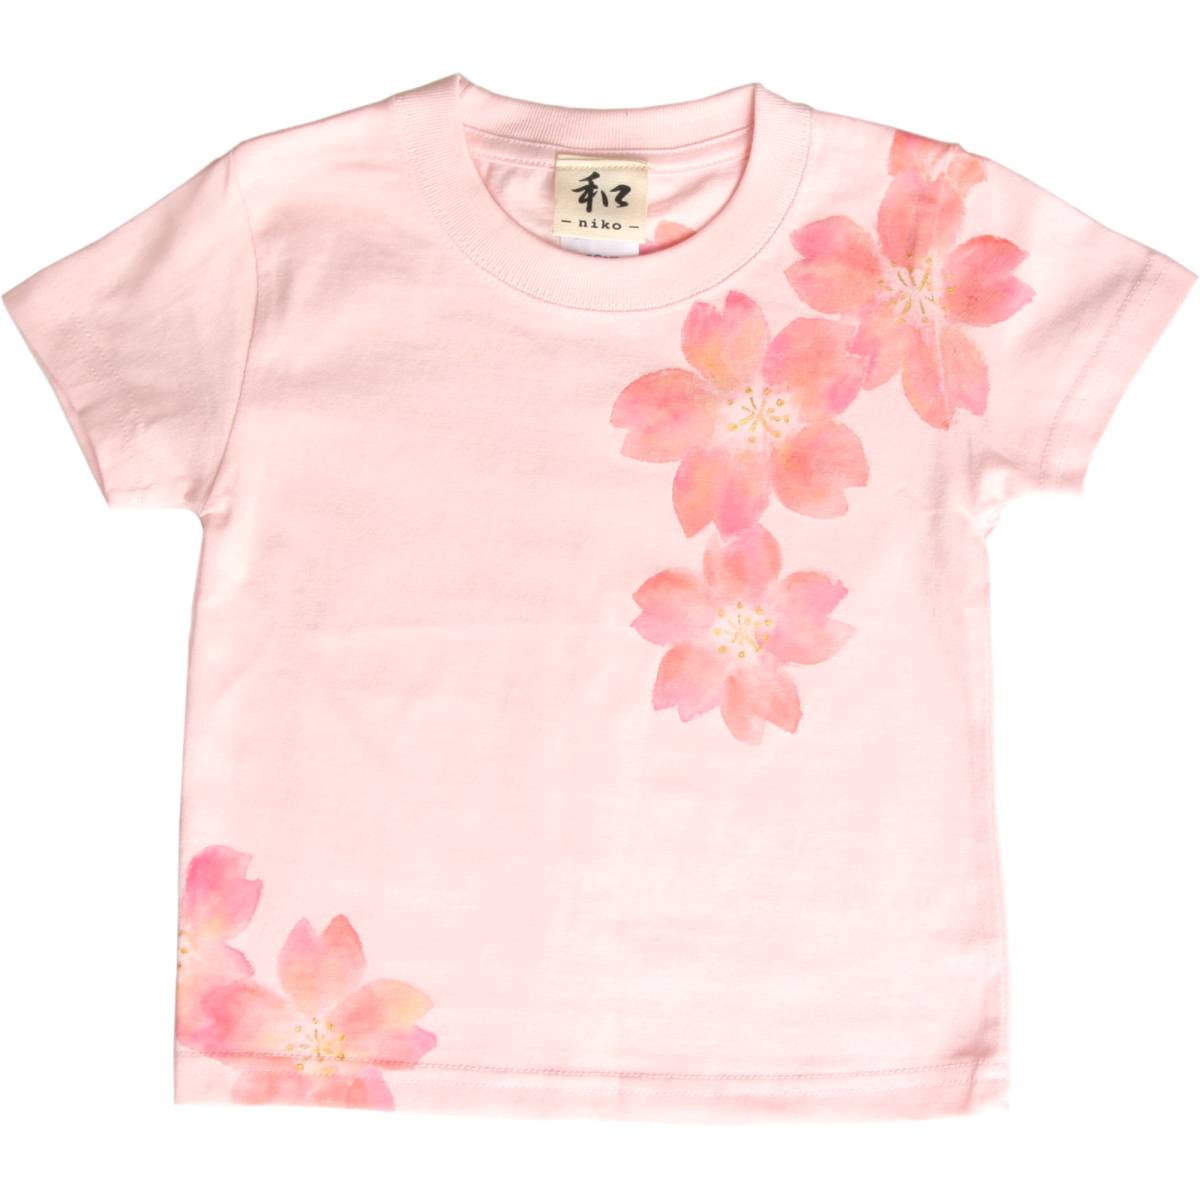 아동복 키즈 티셔츠 사이즈 100 핑크 벚꽃 무늬 티셔츠 수제 손으로 그린 티셔츠 일본식 무늬 봄, 상의, 반소매 티셔츠, 100(95~104cm)